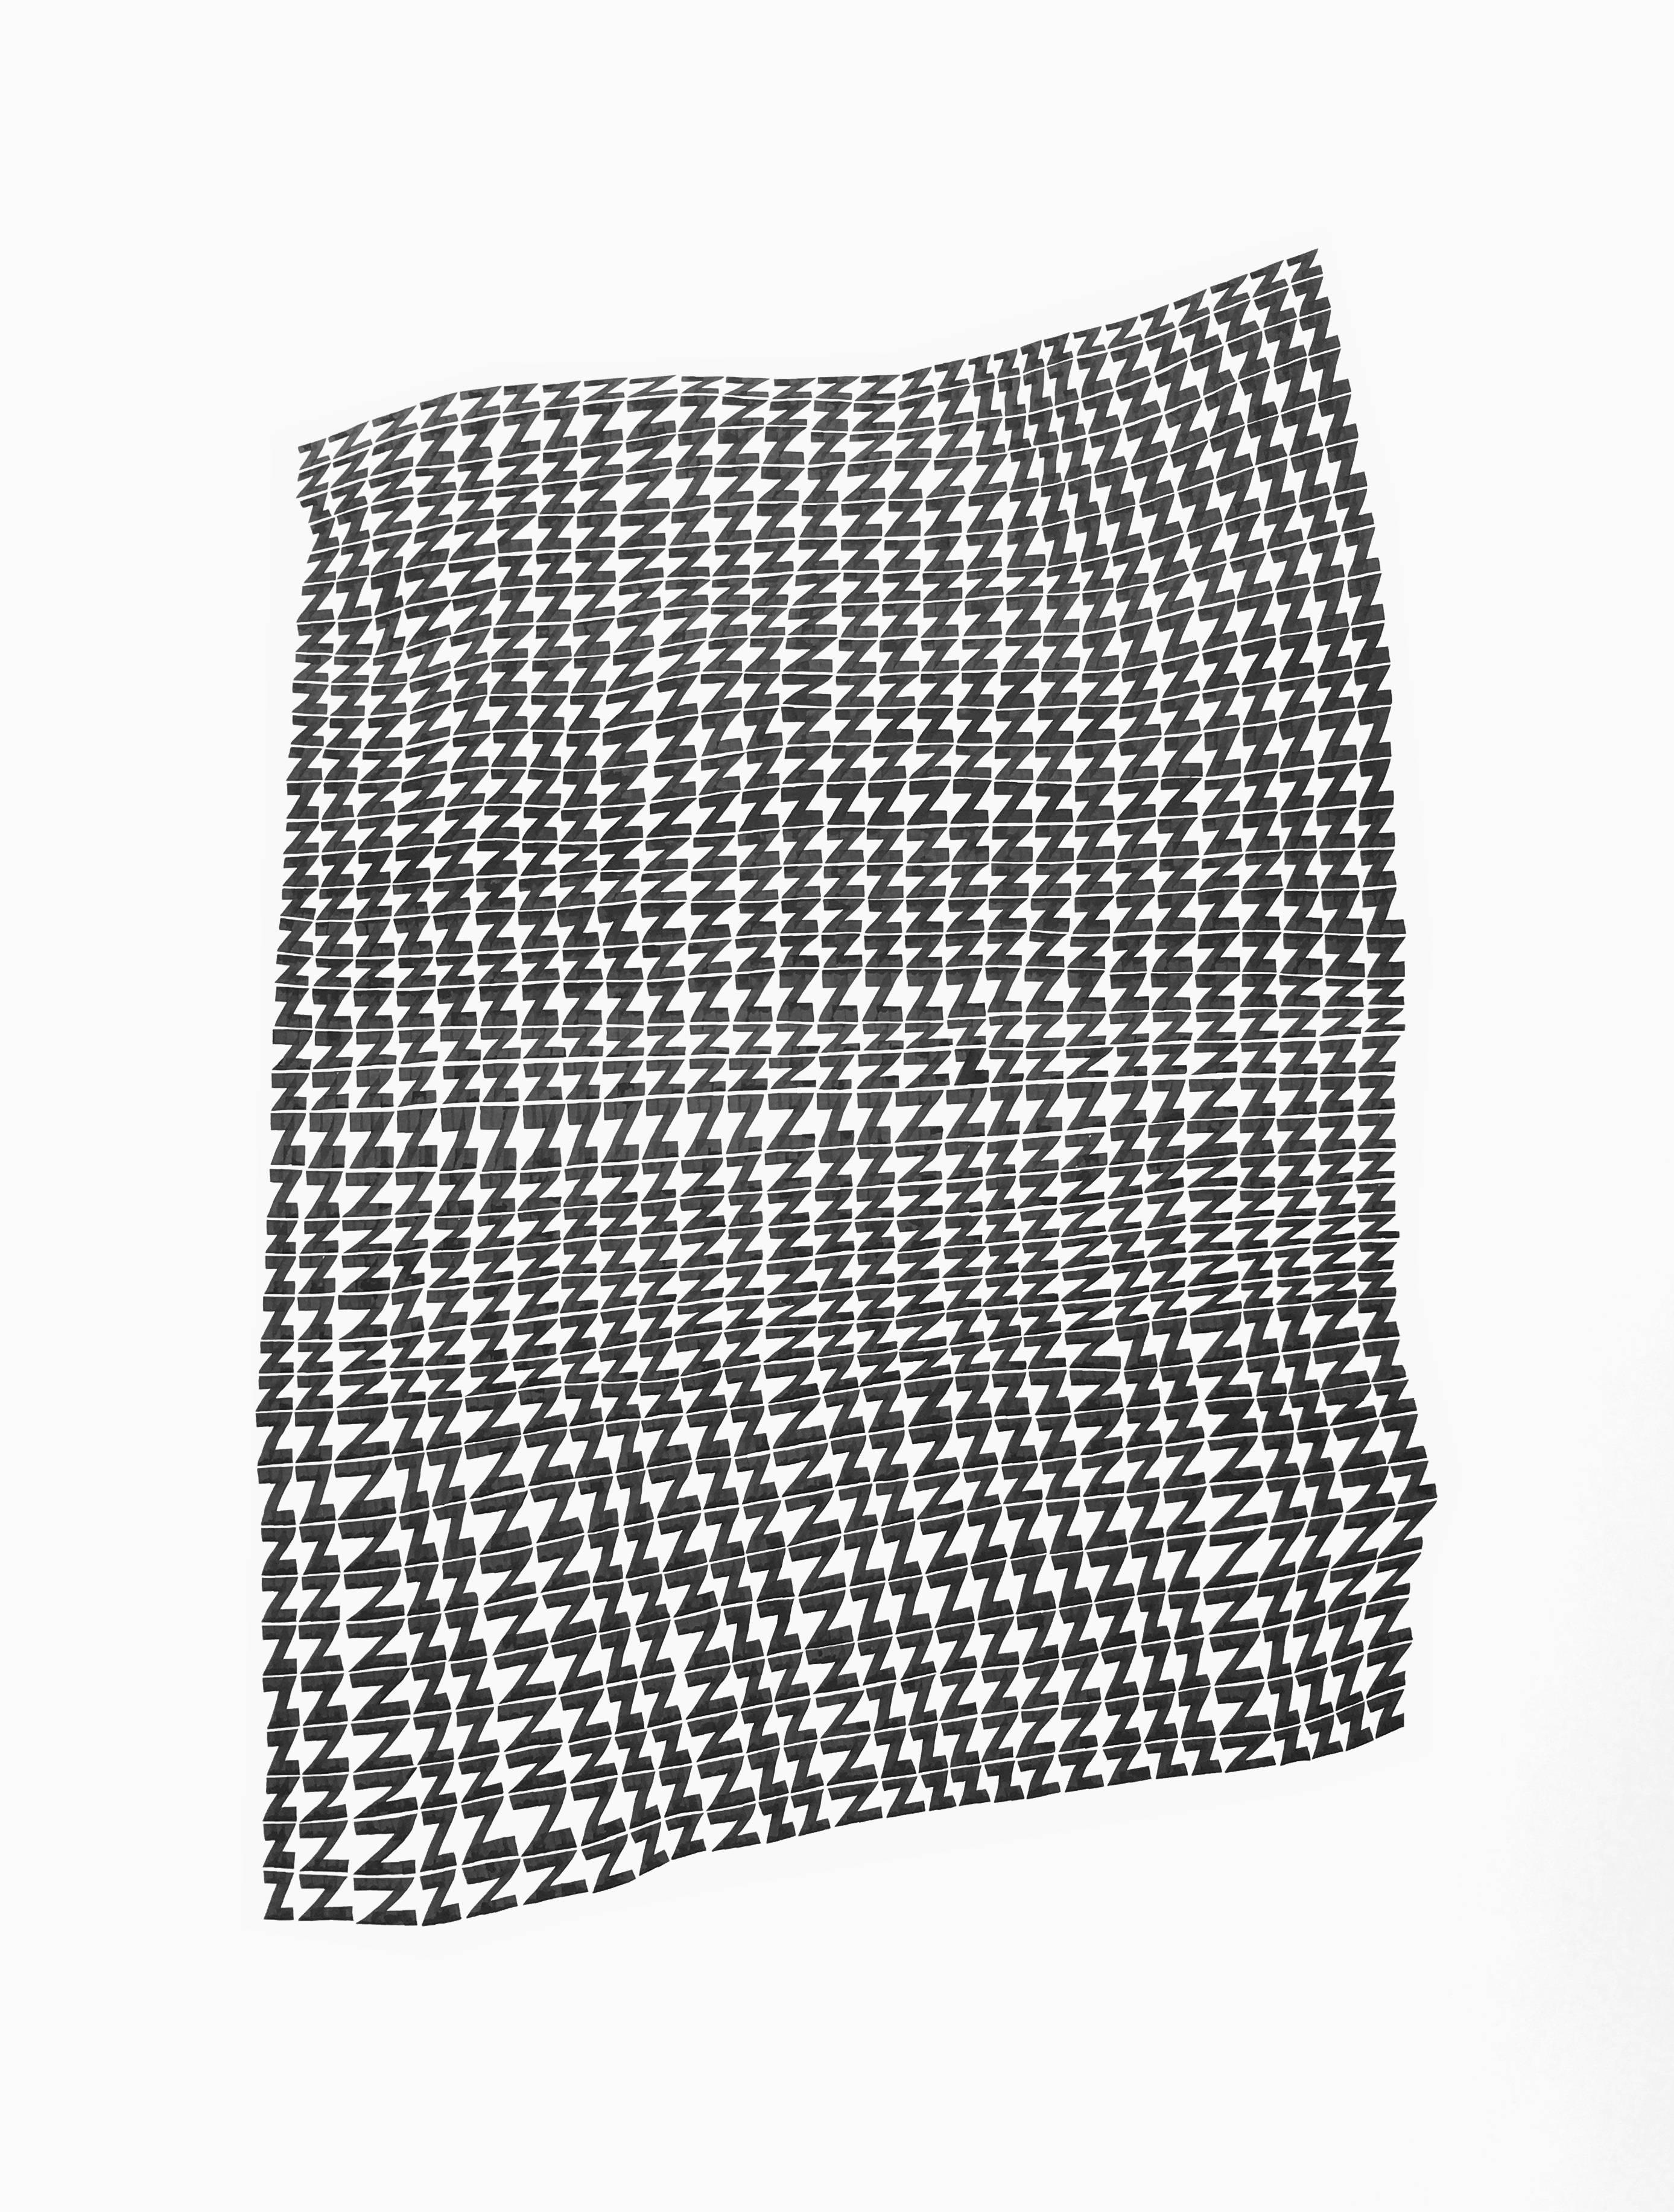 Dana Piazza Abstract Drawing – Zs.1- abstrakte geometrische schwarz-weiße Tuschezeichnung auf Papier